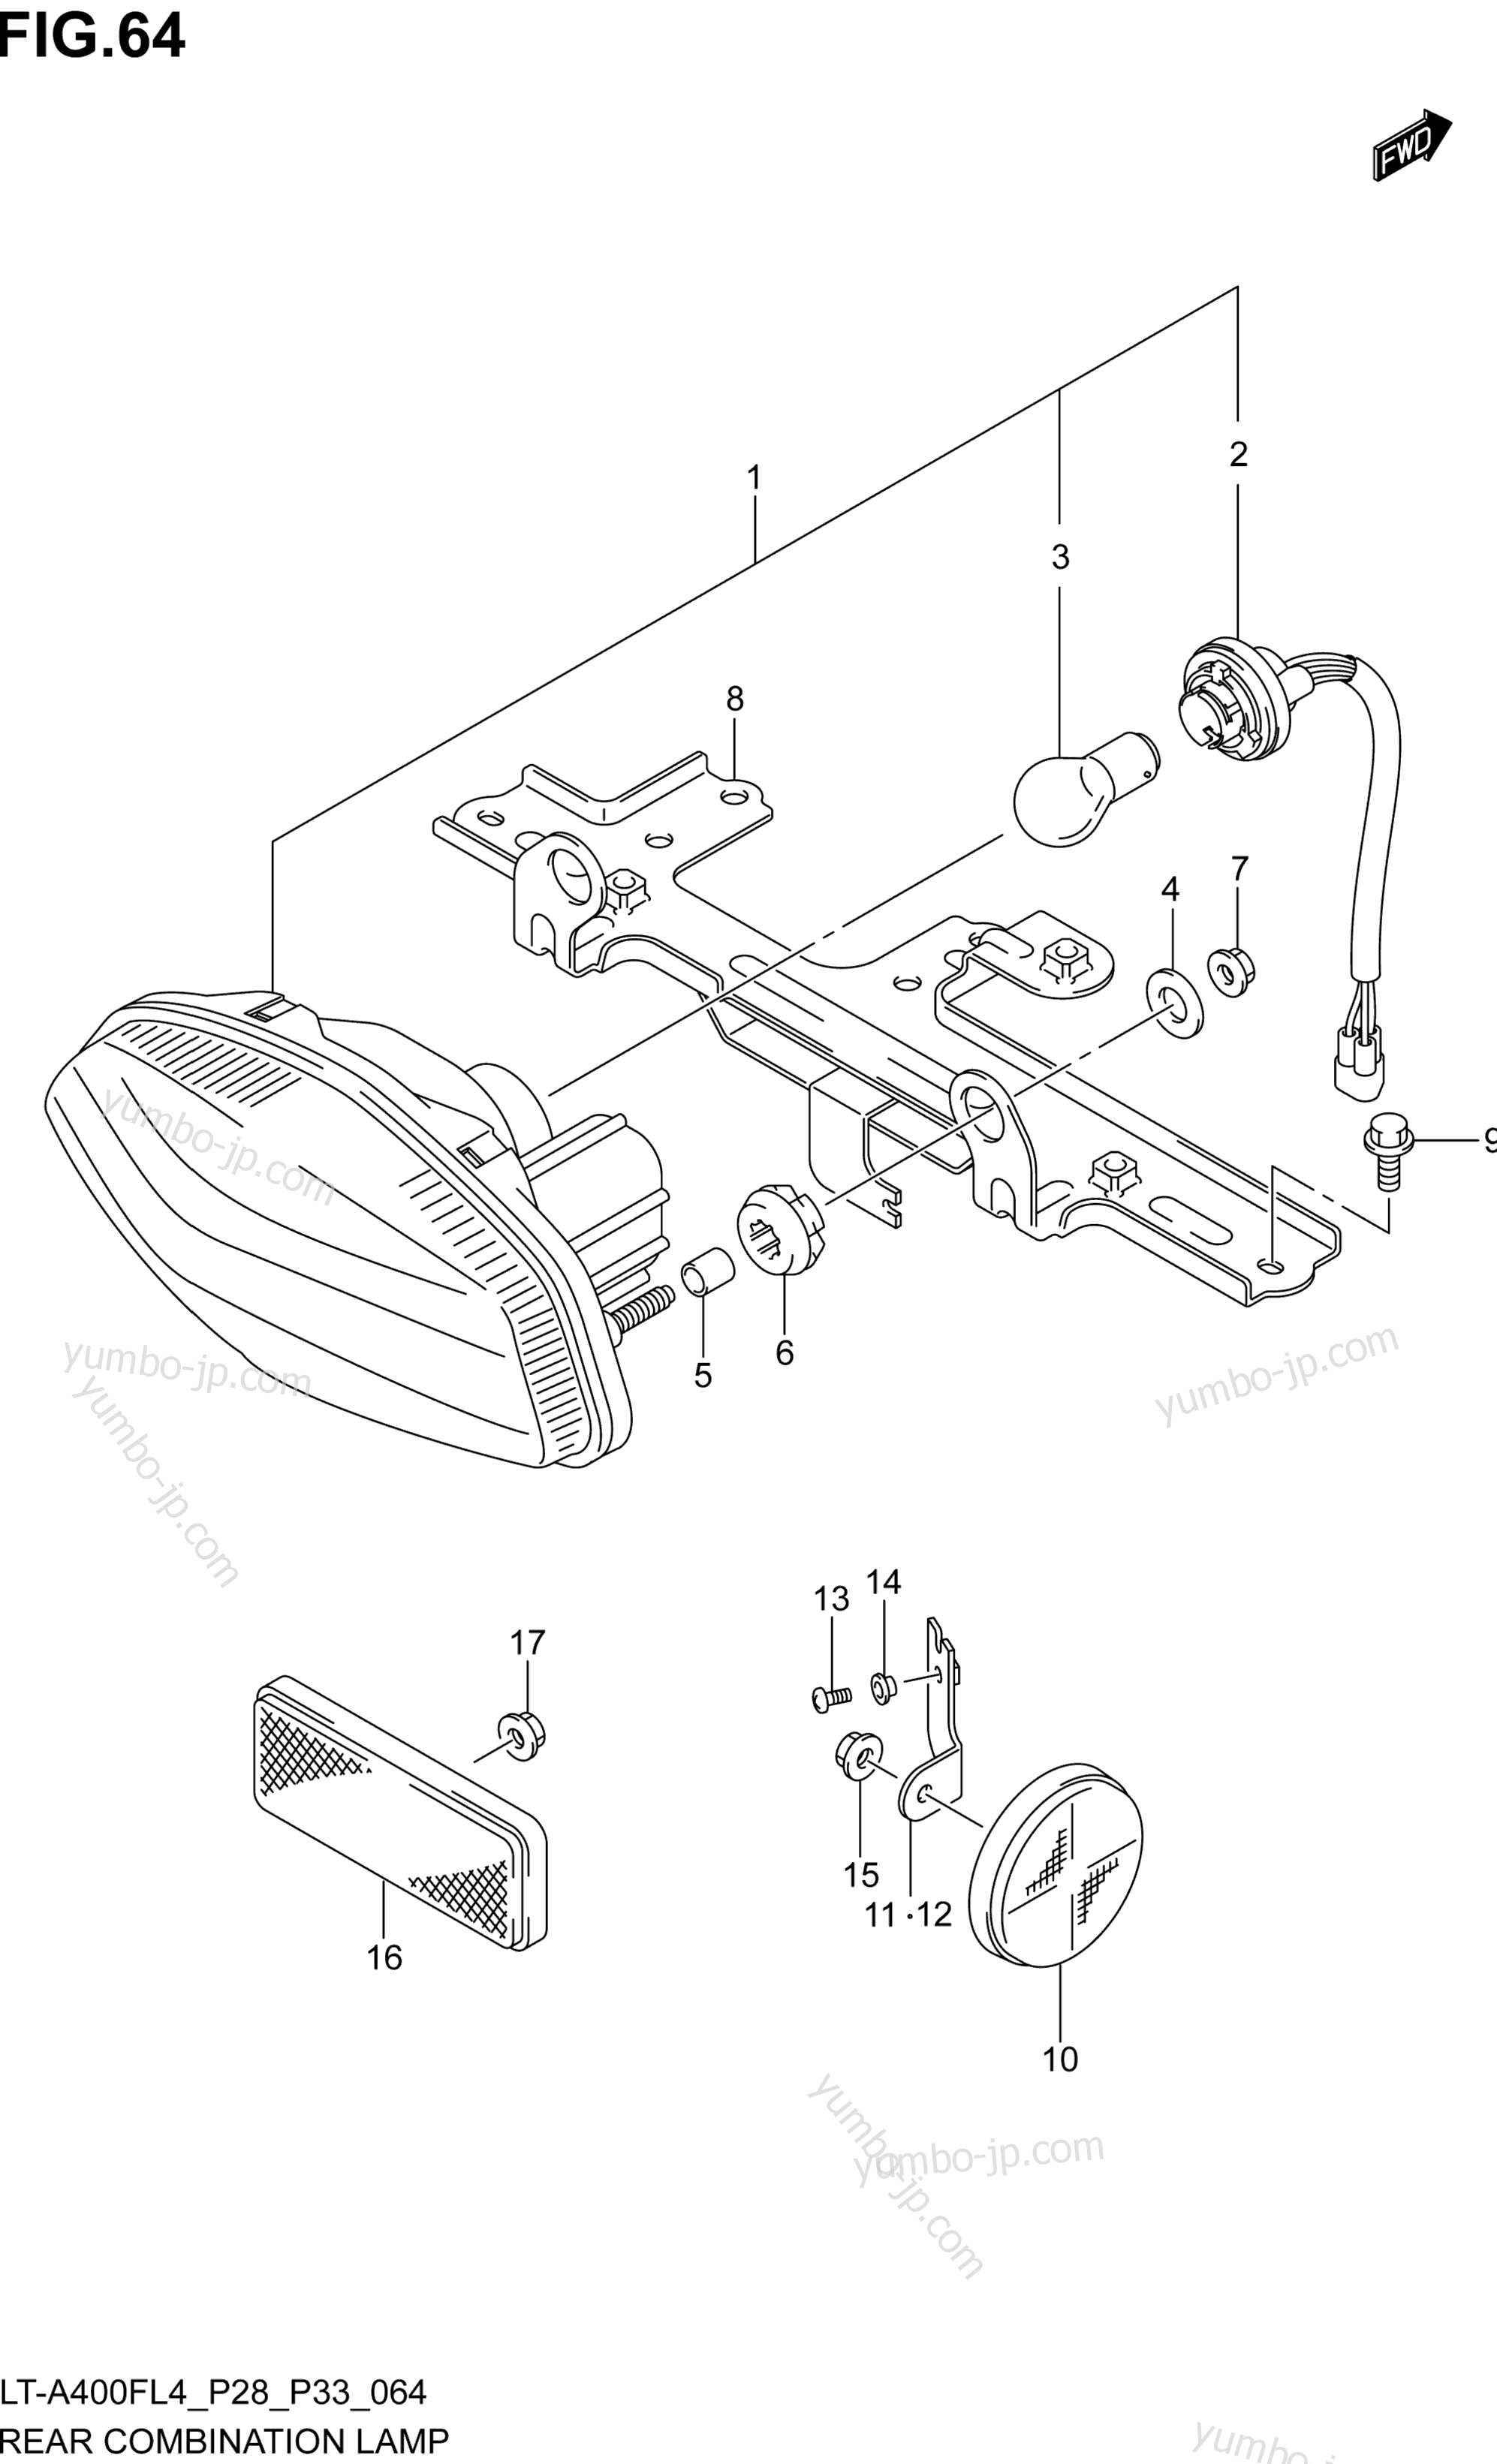 REAR COMBINATION LAMP (LT-A400FL4 P28) для квадроциклов SUZUKI LT-A400F 2014 г.